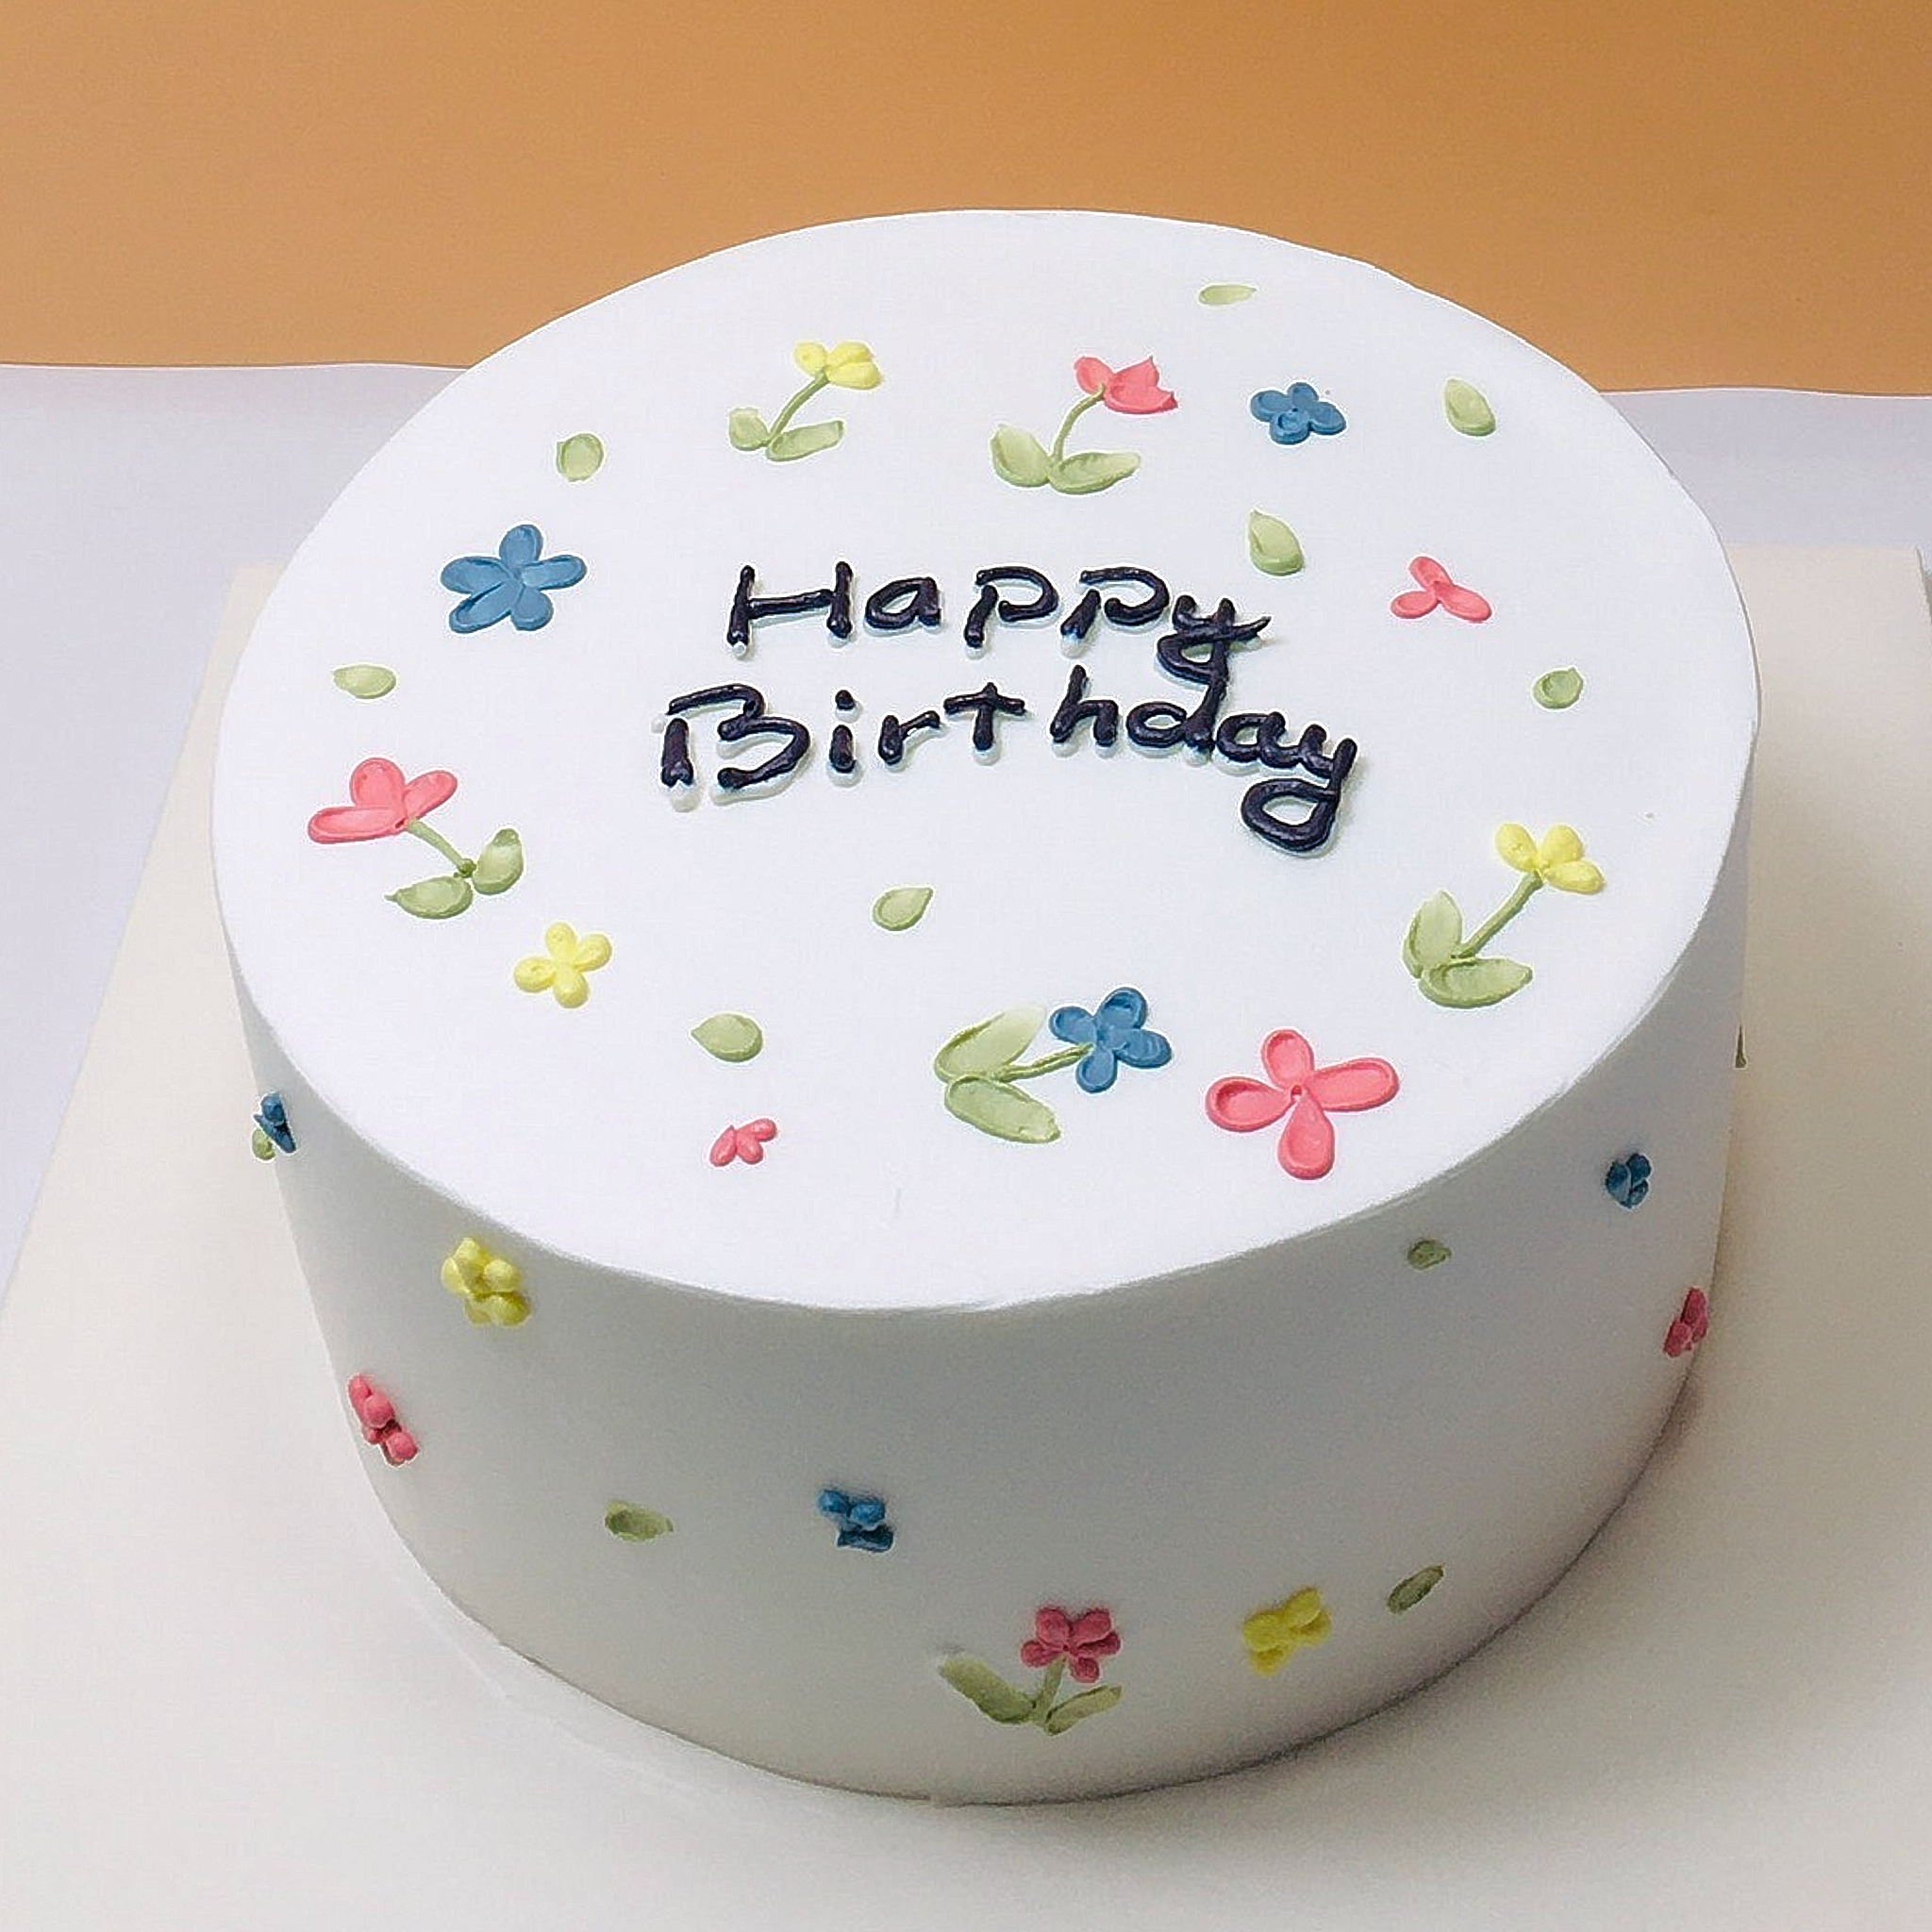 Frases graciosas para tartas de cumpleaños: El único regalo que puedes comer y disfrutar a la vez